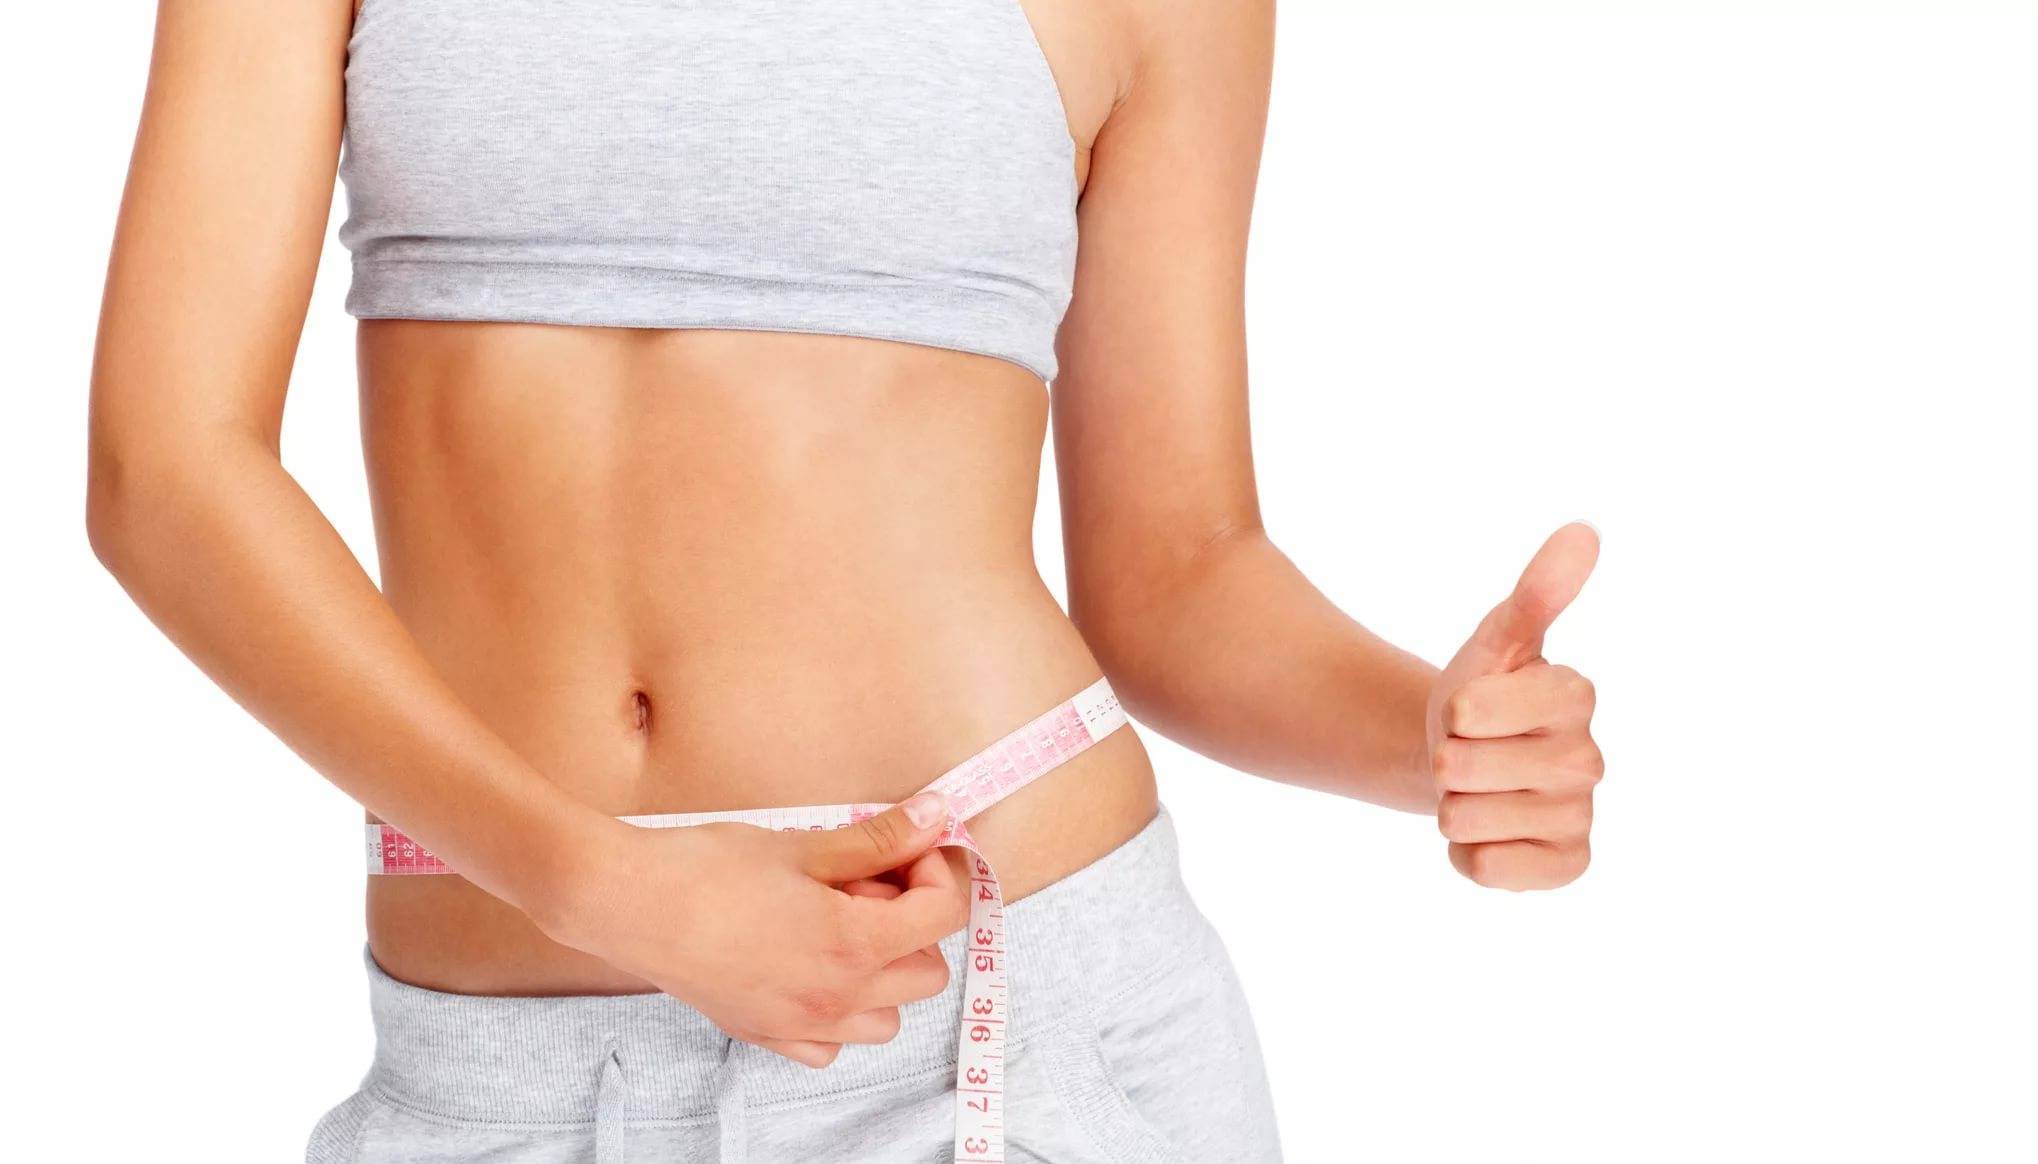 Жир в организме: как откладывается, сжигается и выводится при похудении